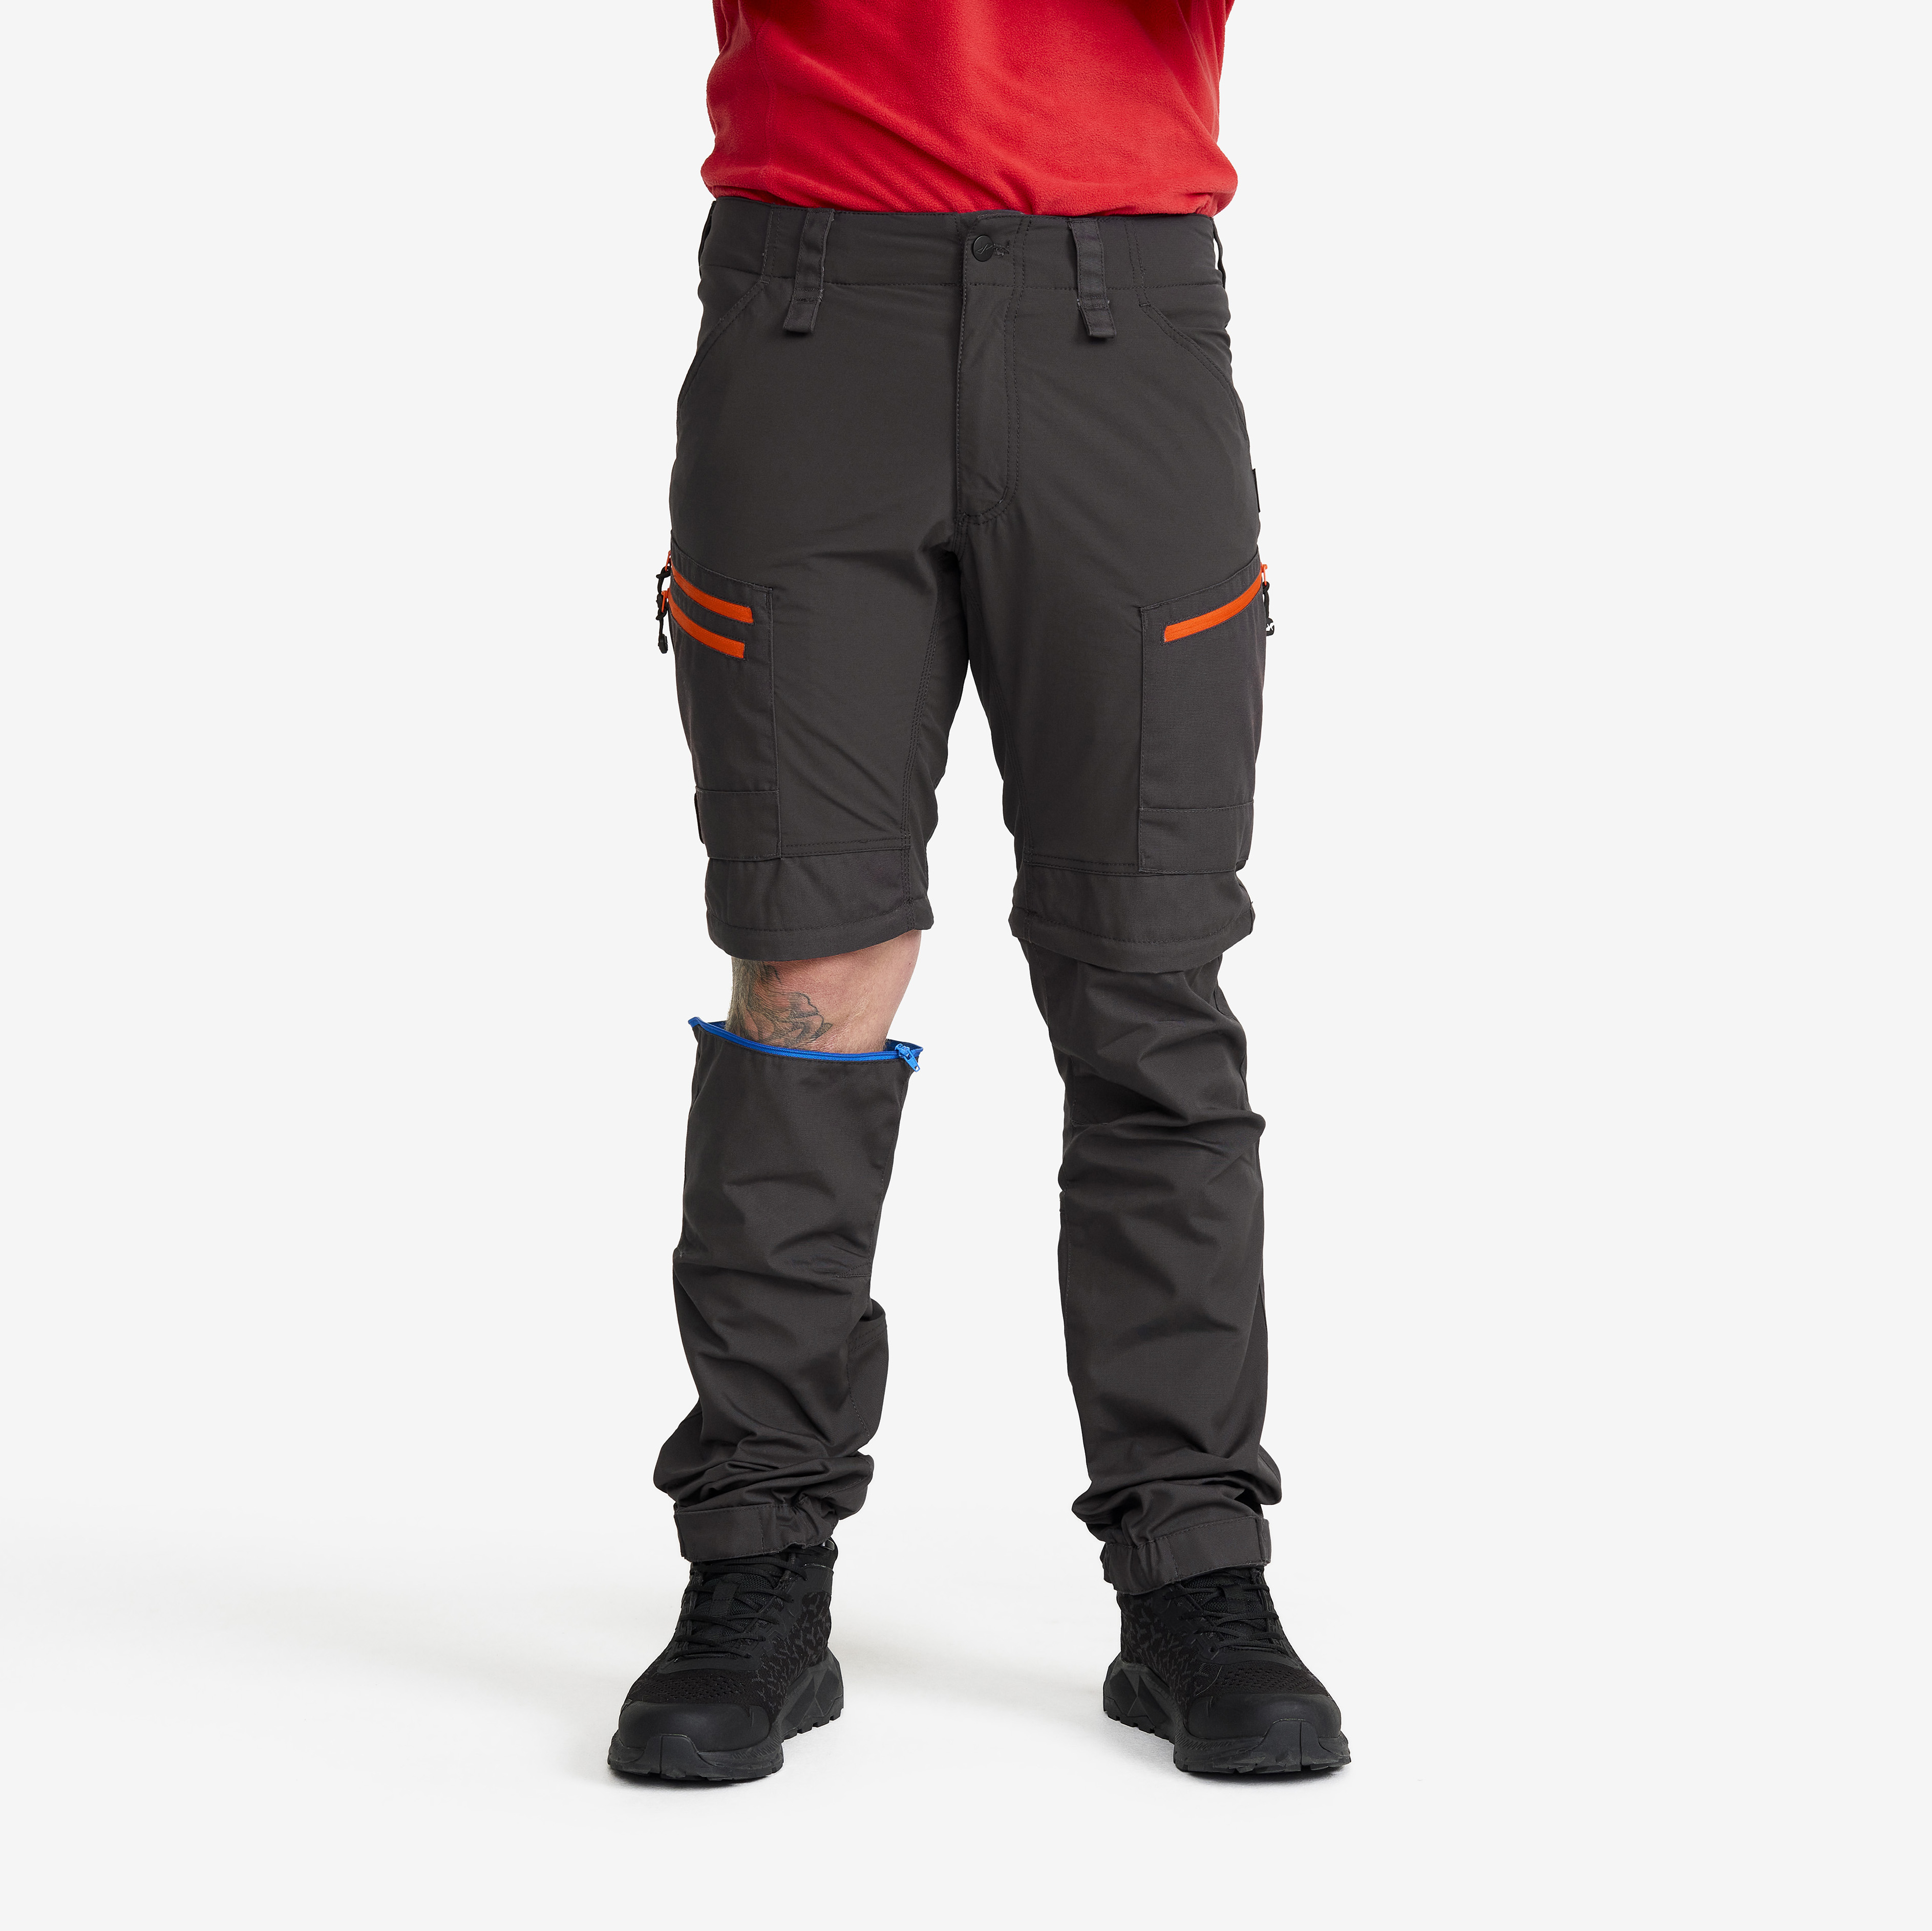 RVRC GP Pro Zip-off Pants Miehet Grey/Orange Koko:L – Zip-off-housut